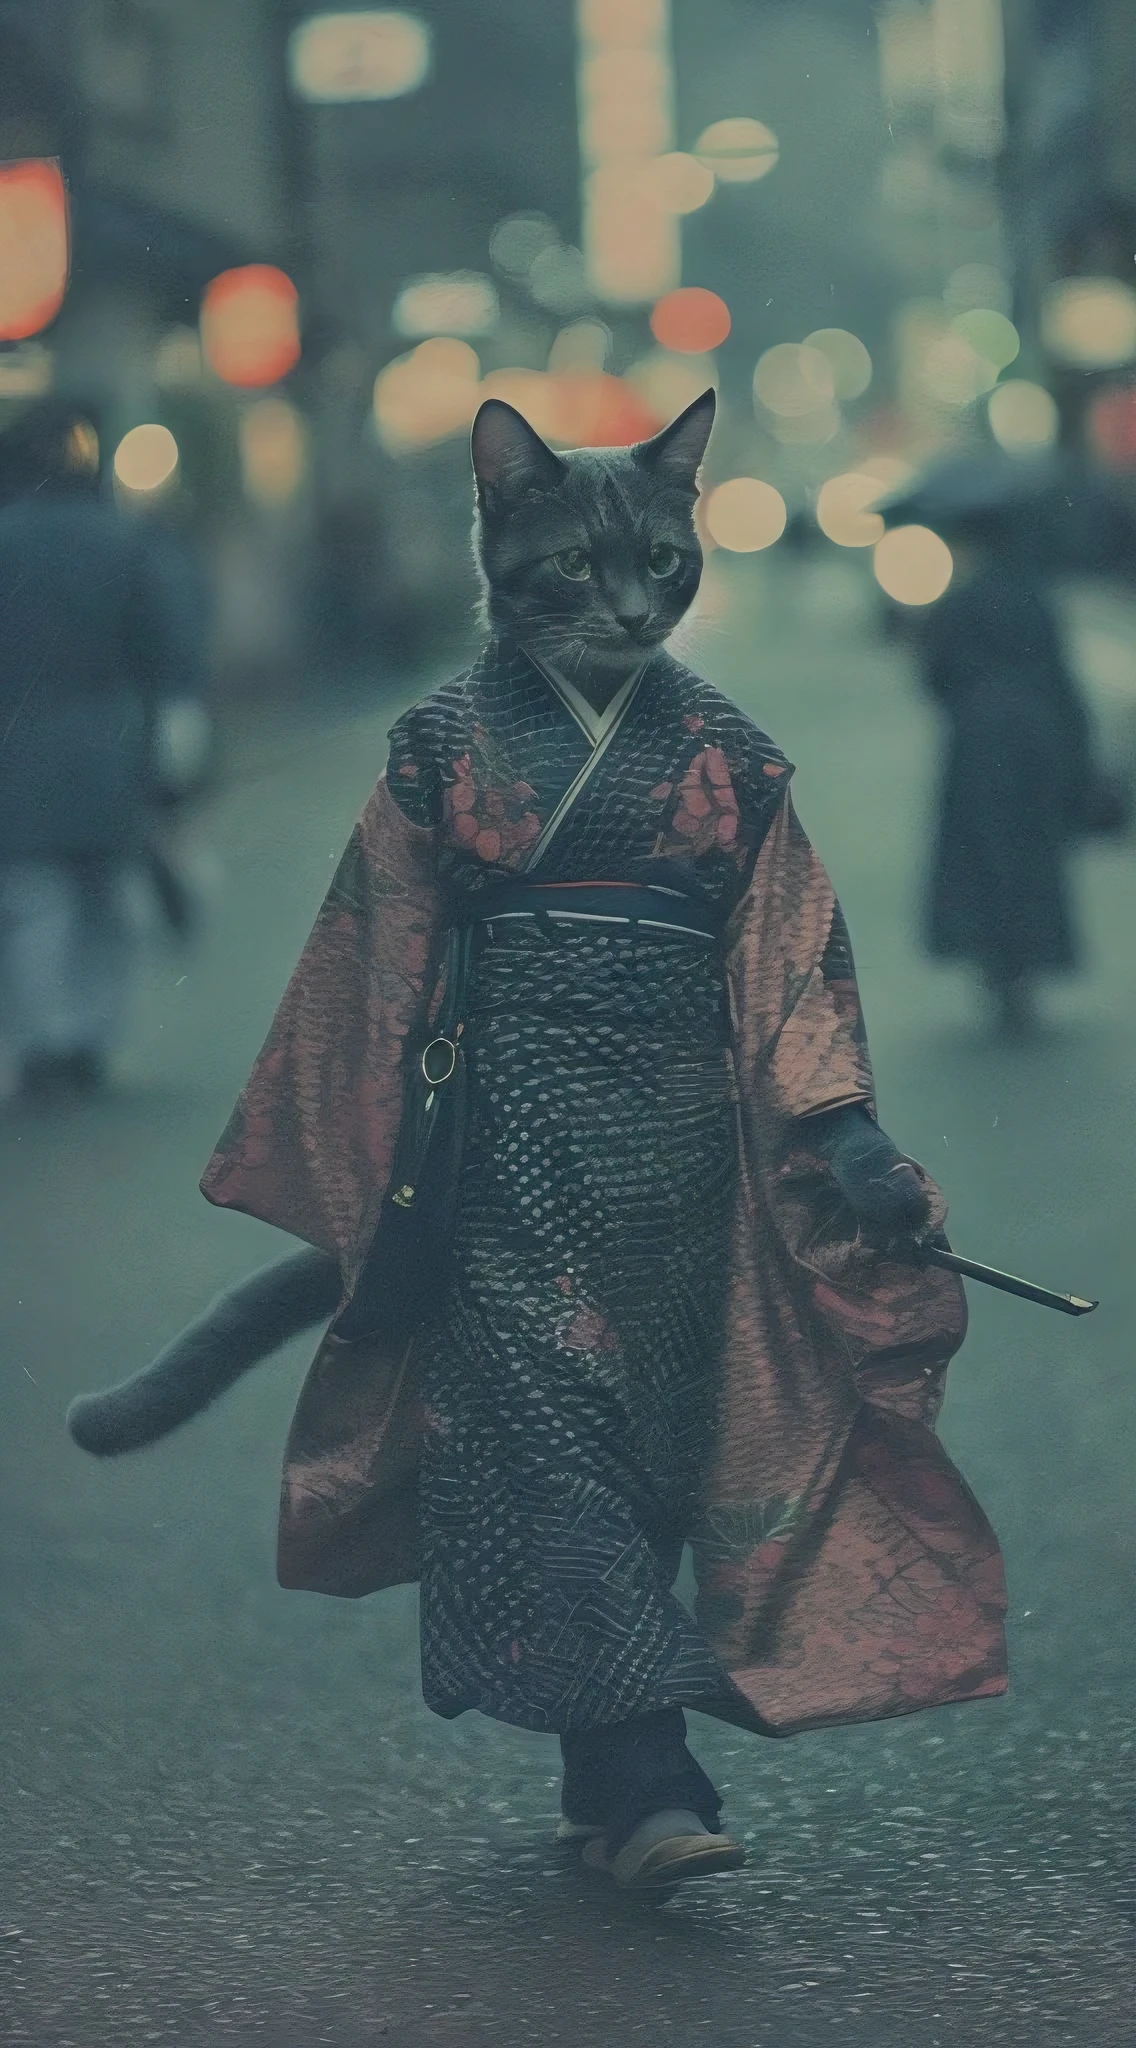 美しい着物を着た人型猫, 京都の街を歩く, アナログ写真, 複雑なディテール, 映画照明, 落ち着いたカラーパレット, フィルムグレイン, 被写界深度, 高品質, 傑作